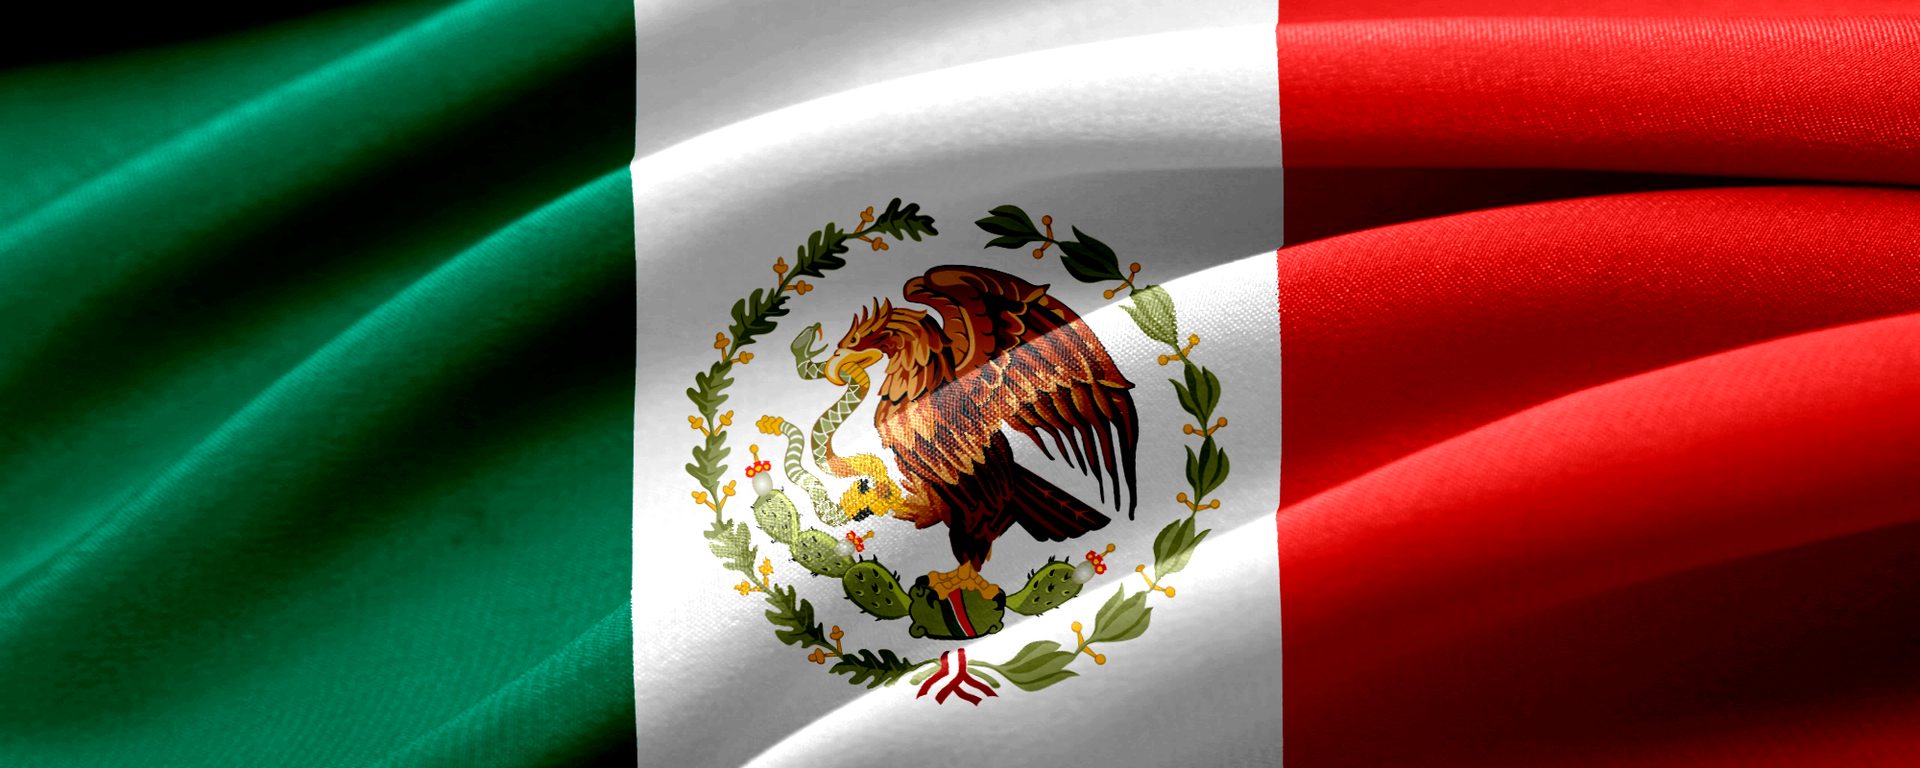 Bandera de México - Sputnik Mundo, 1920, 02.11.2020